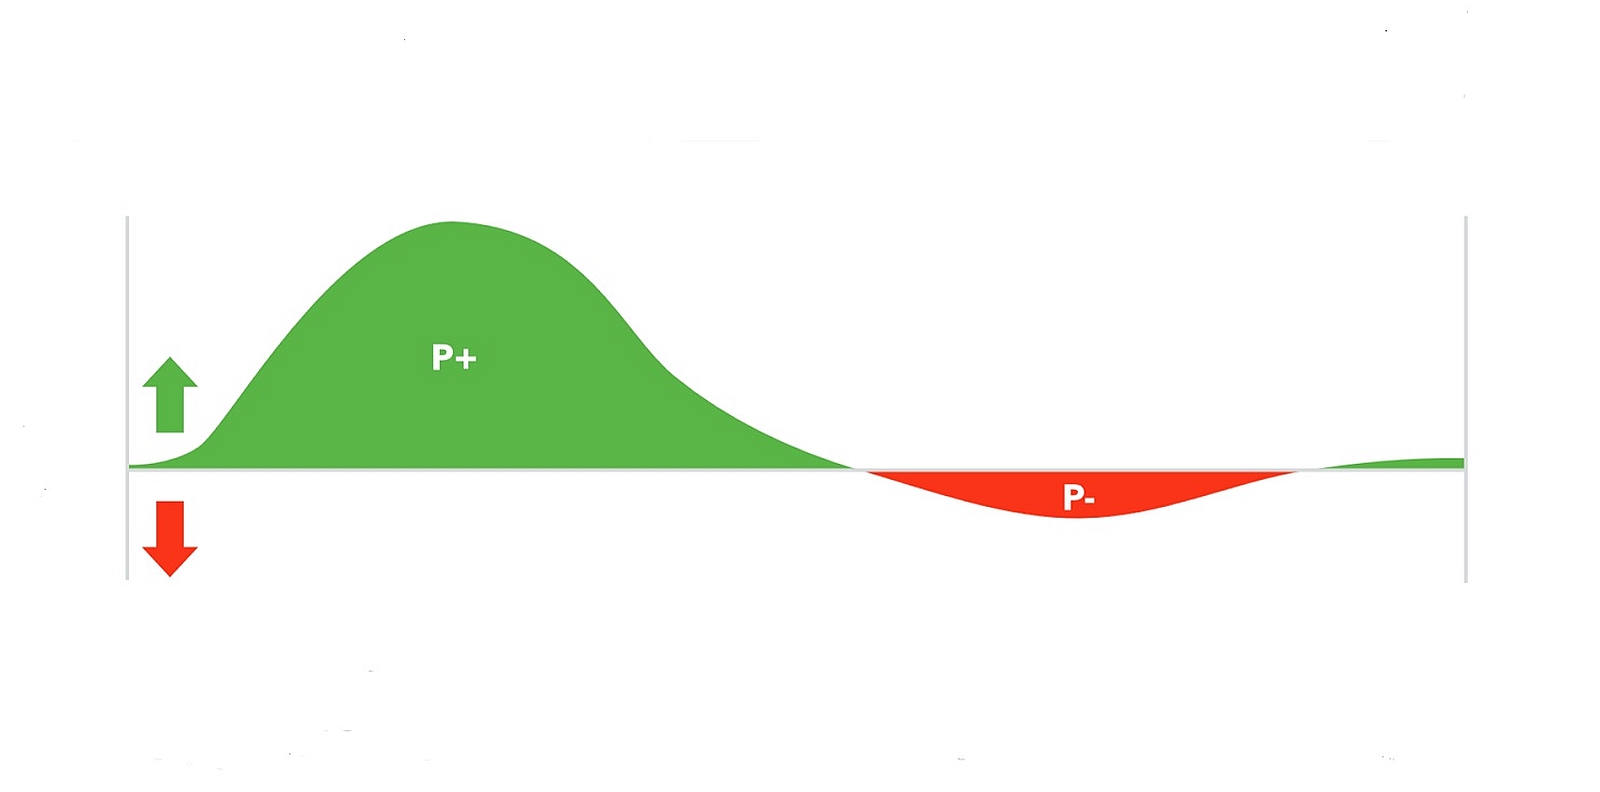 Drehmomenteffizienz. Vortriebswirksame Kraft in Grün, bremsende Kräfte des entgegengesetzen Beines auf die Kurbel in Rot.